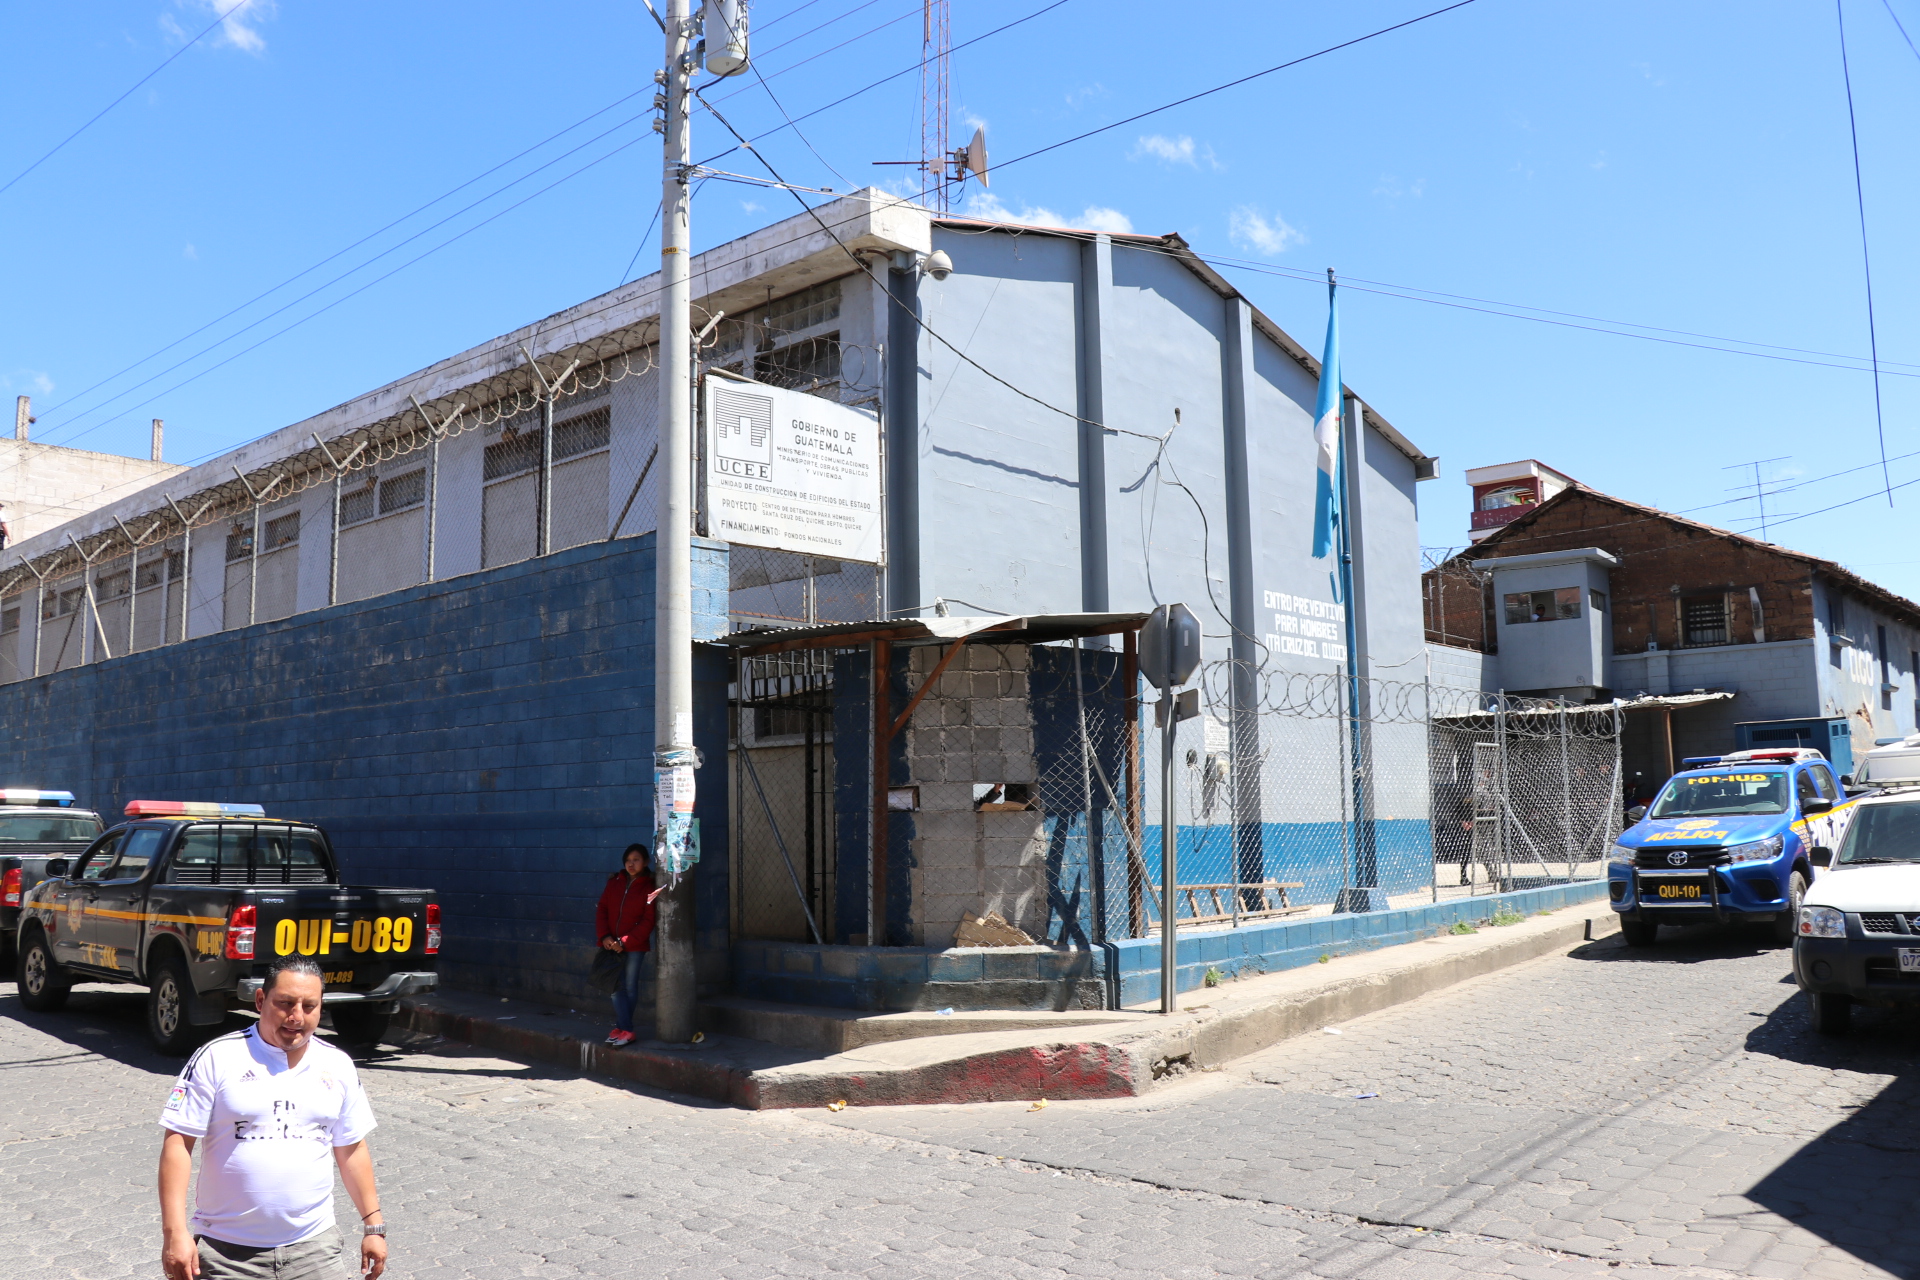 El preventivo colinda con casas particulares y solo es separado por paredes de bloc.  (Foto Prensa Libre: Héctor Cordero).